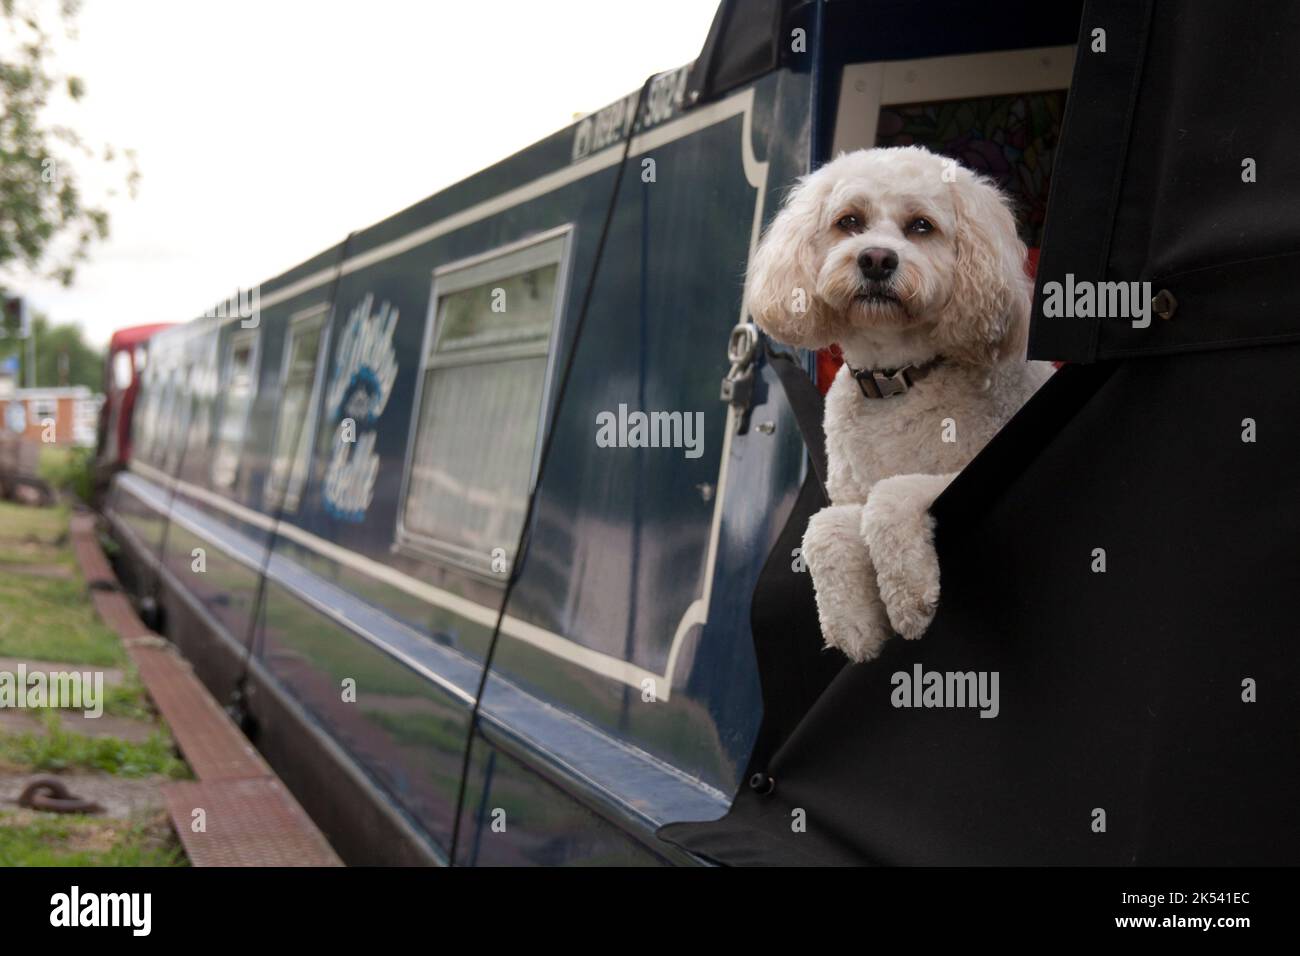 dog on canal boat, UK Stock Photo